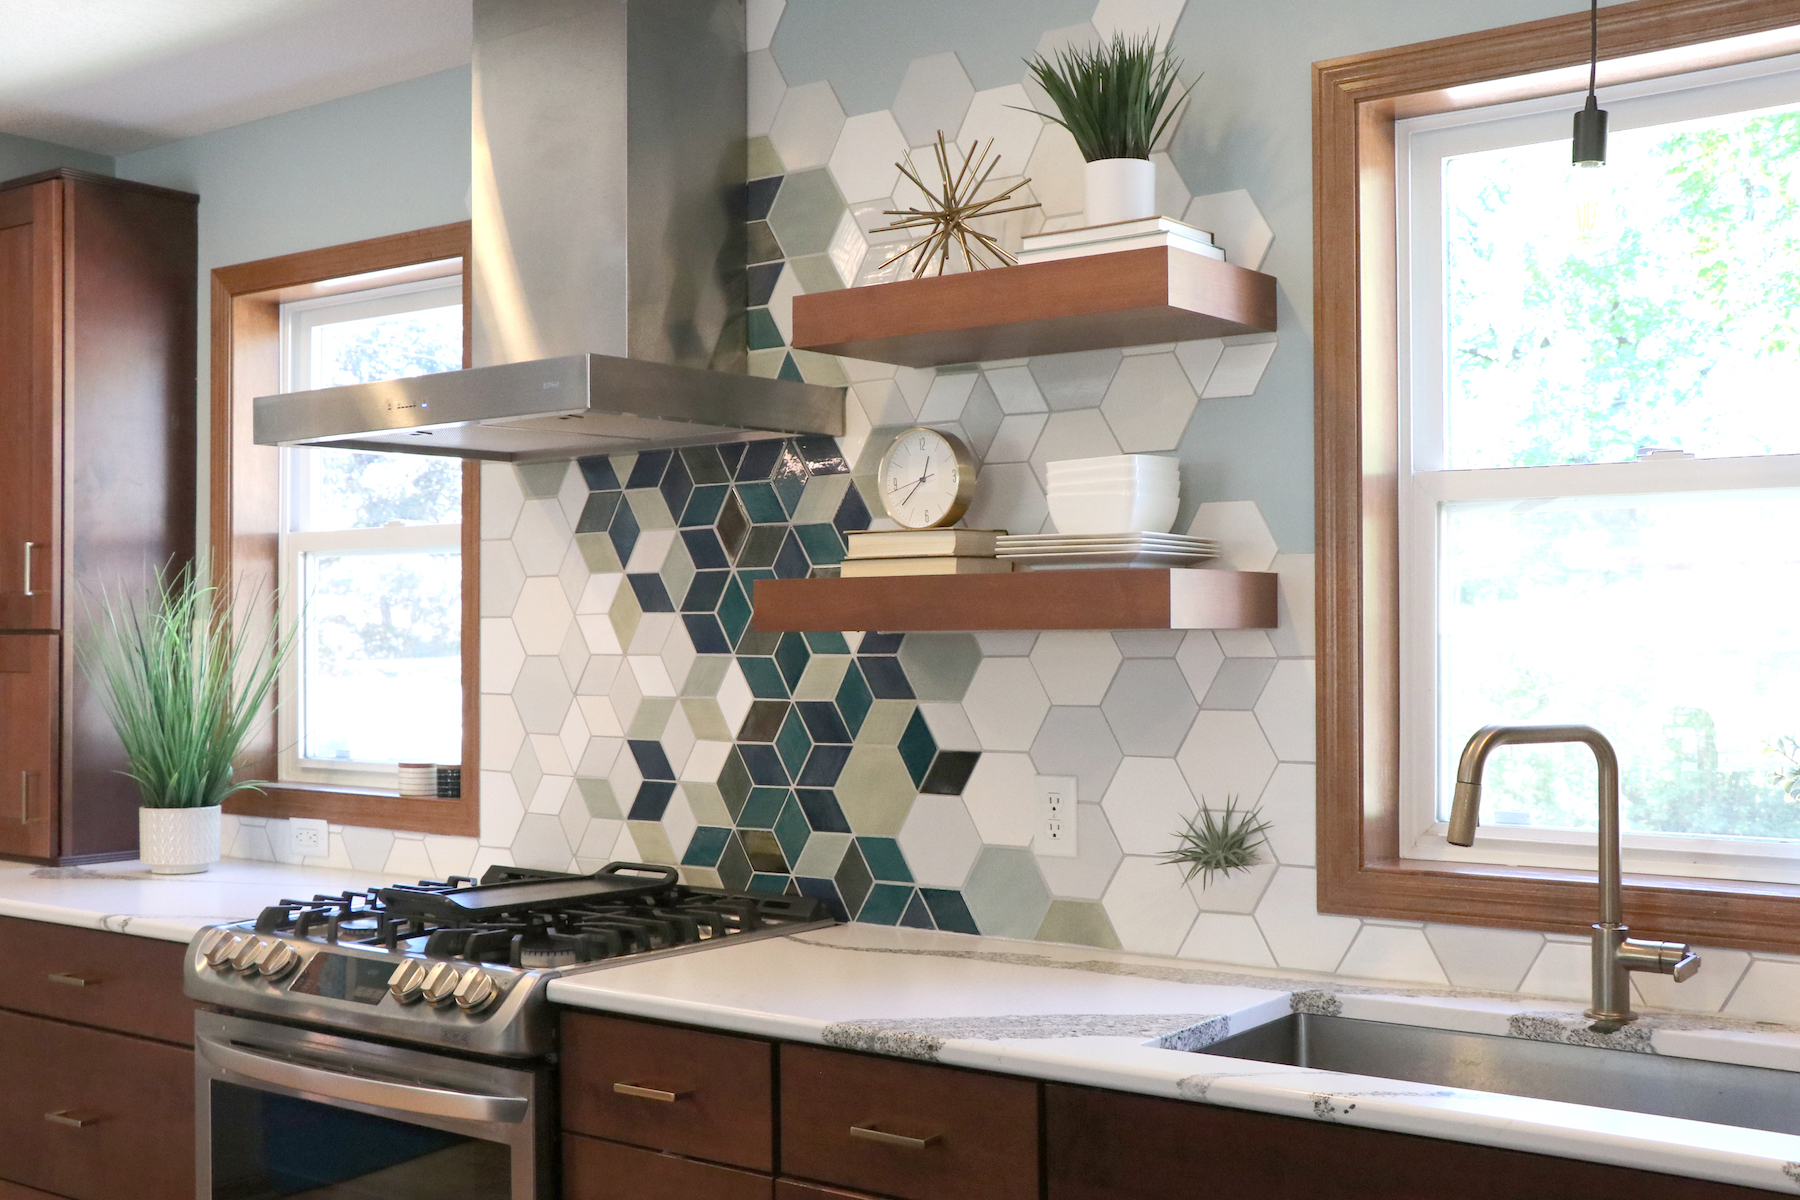 Kitchen remodel with new modern tile backsplash and floating shelves